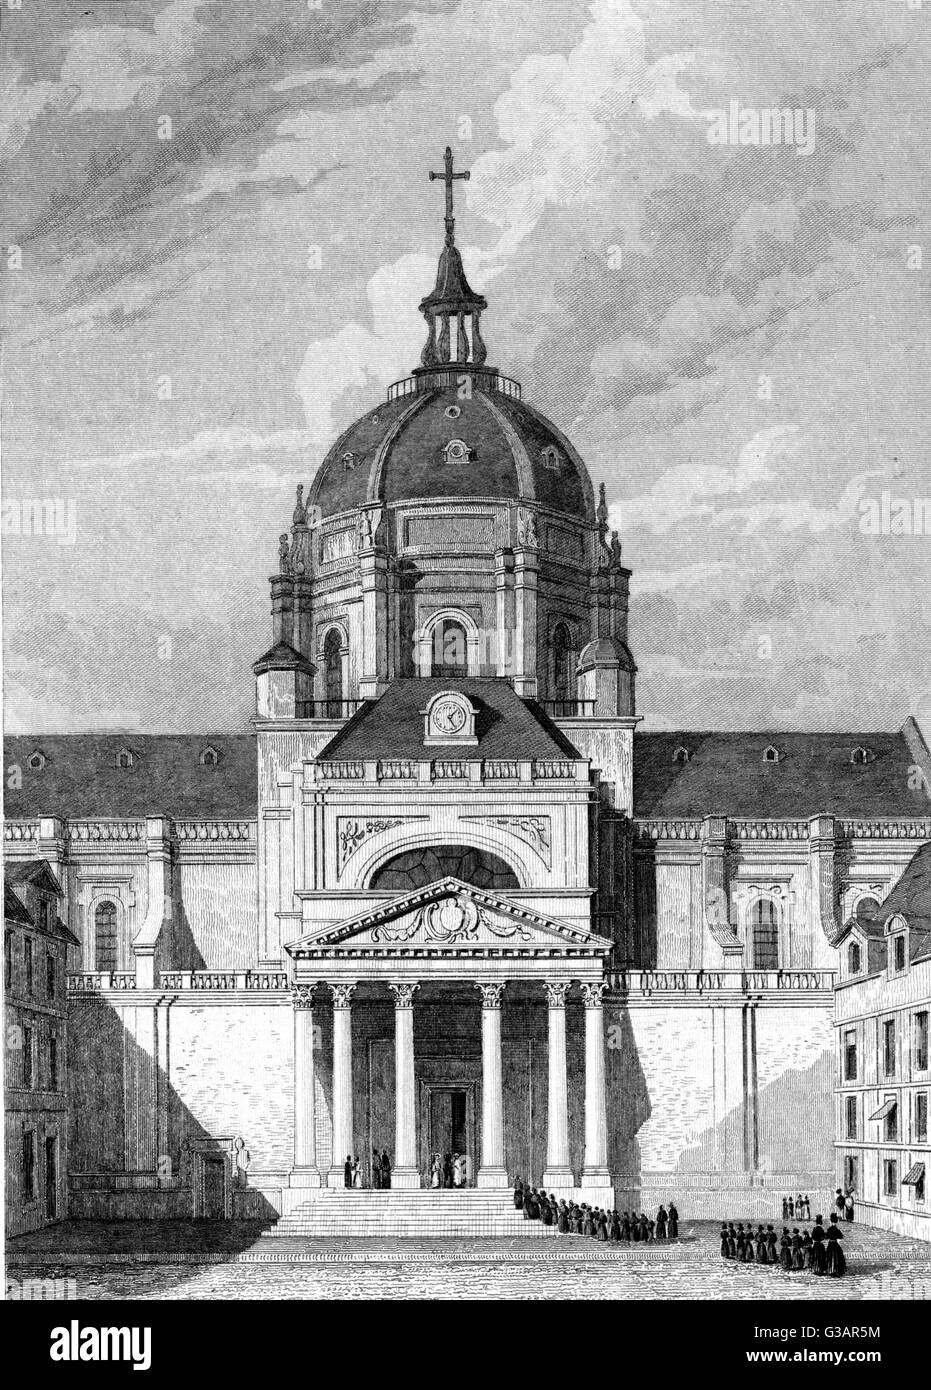 Paris, France - Eglise de Sorbonne.     Date: 1831 Stock Photo